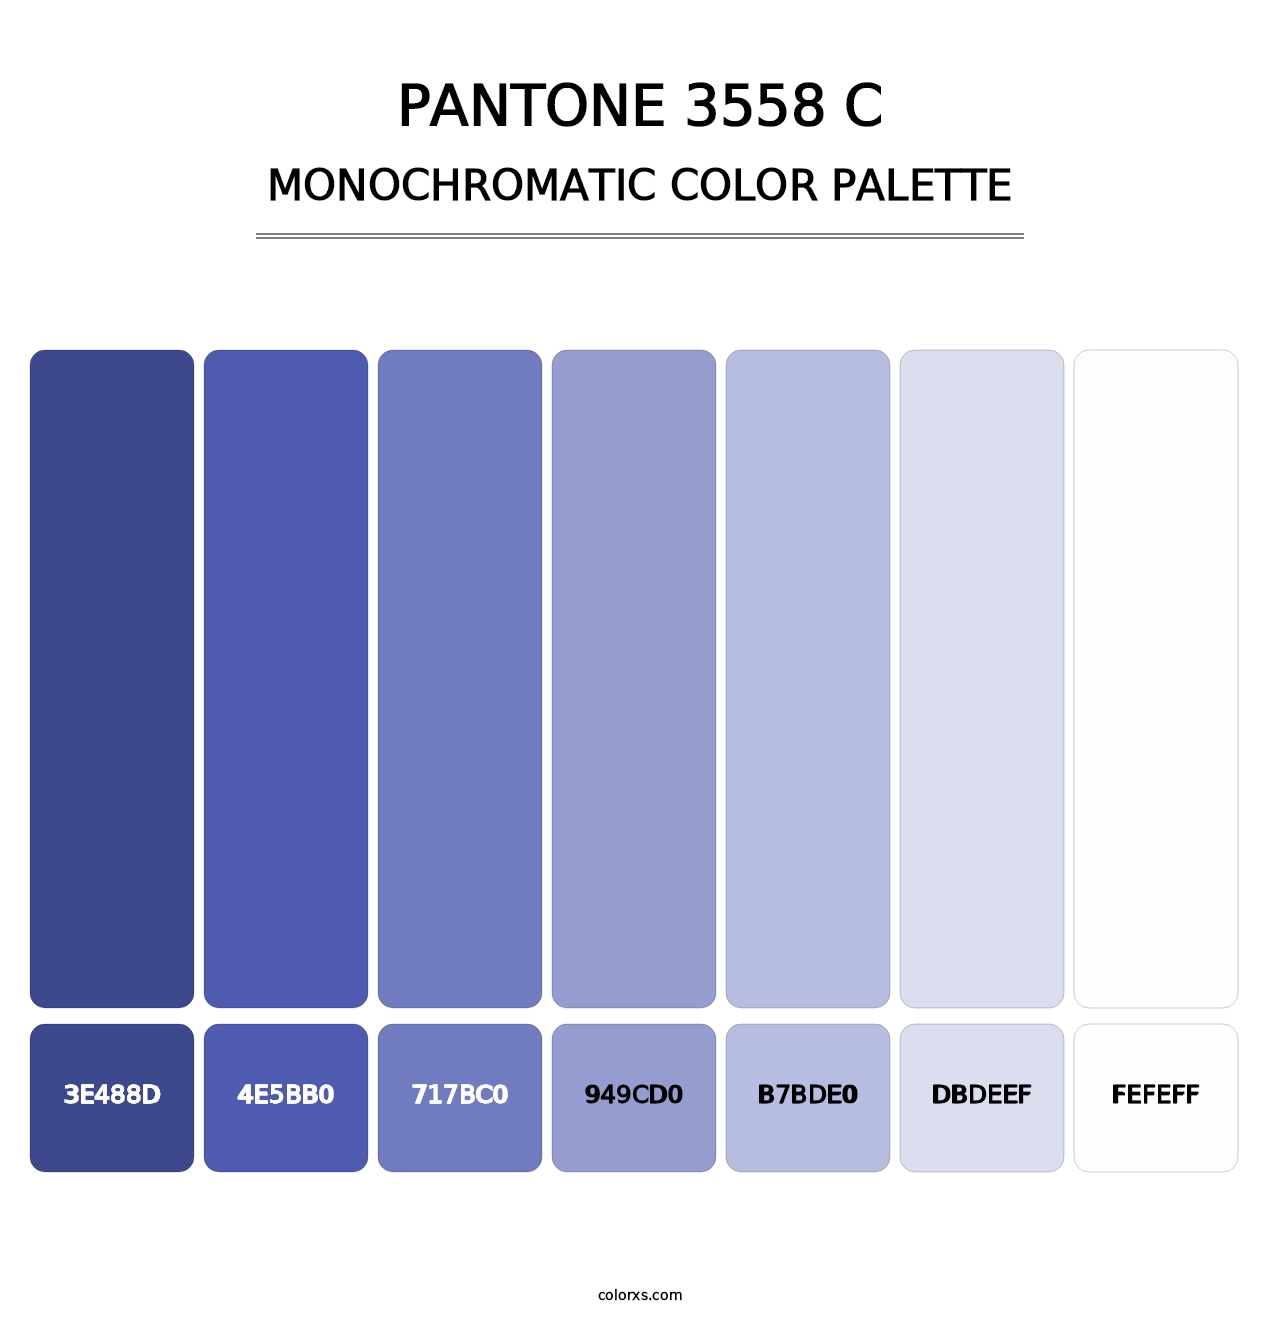 PANTONE 3558 C - Monochromatic Color Palette